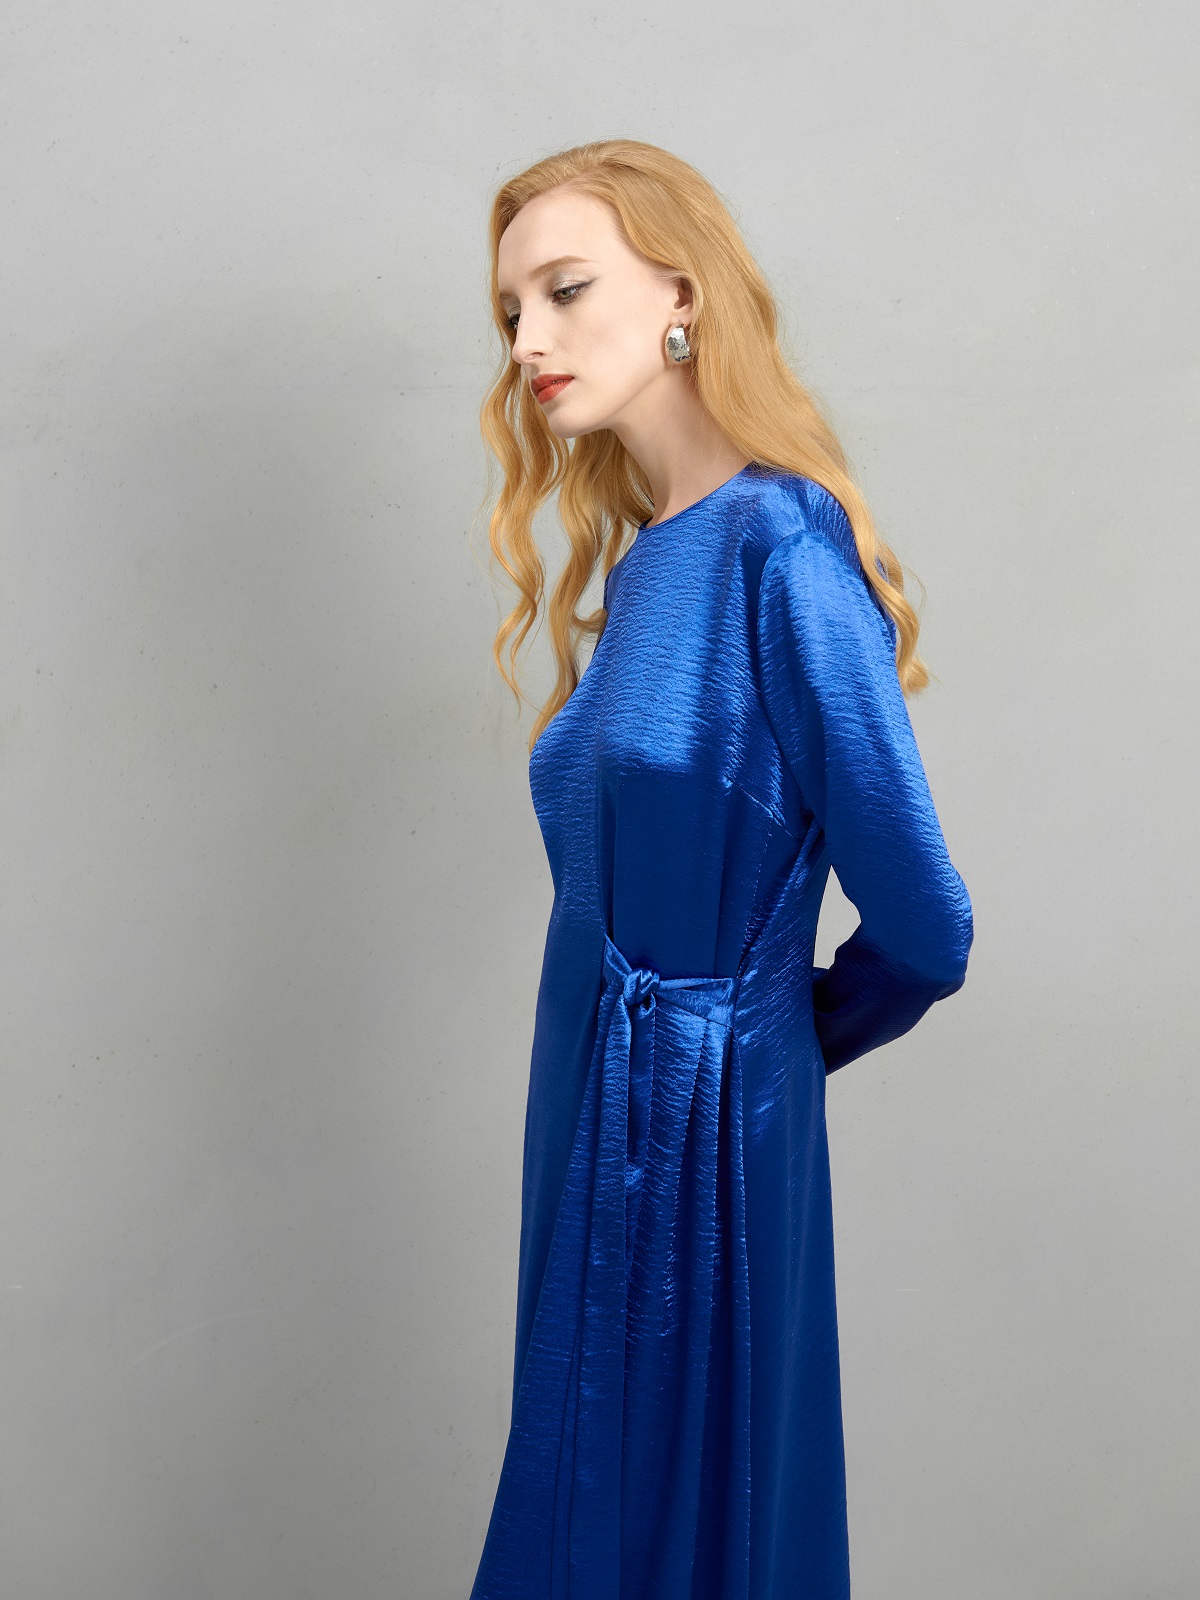 Синее платье с поясом